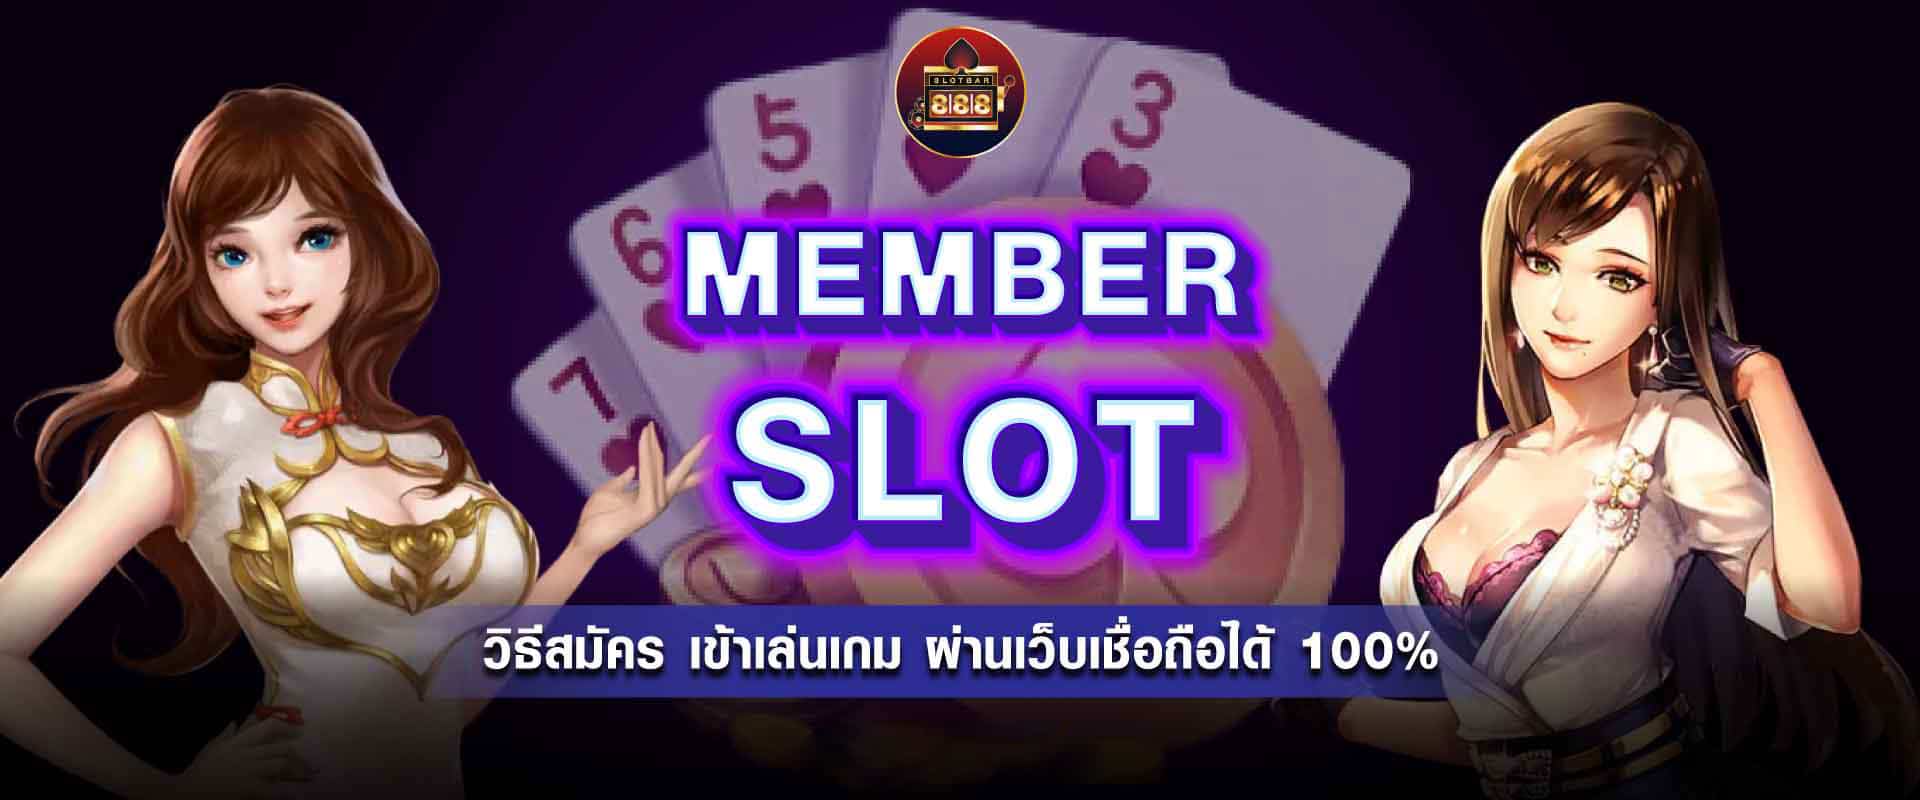 member slot